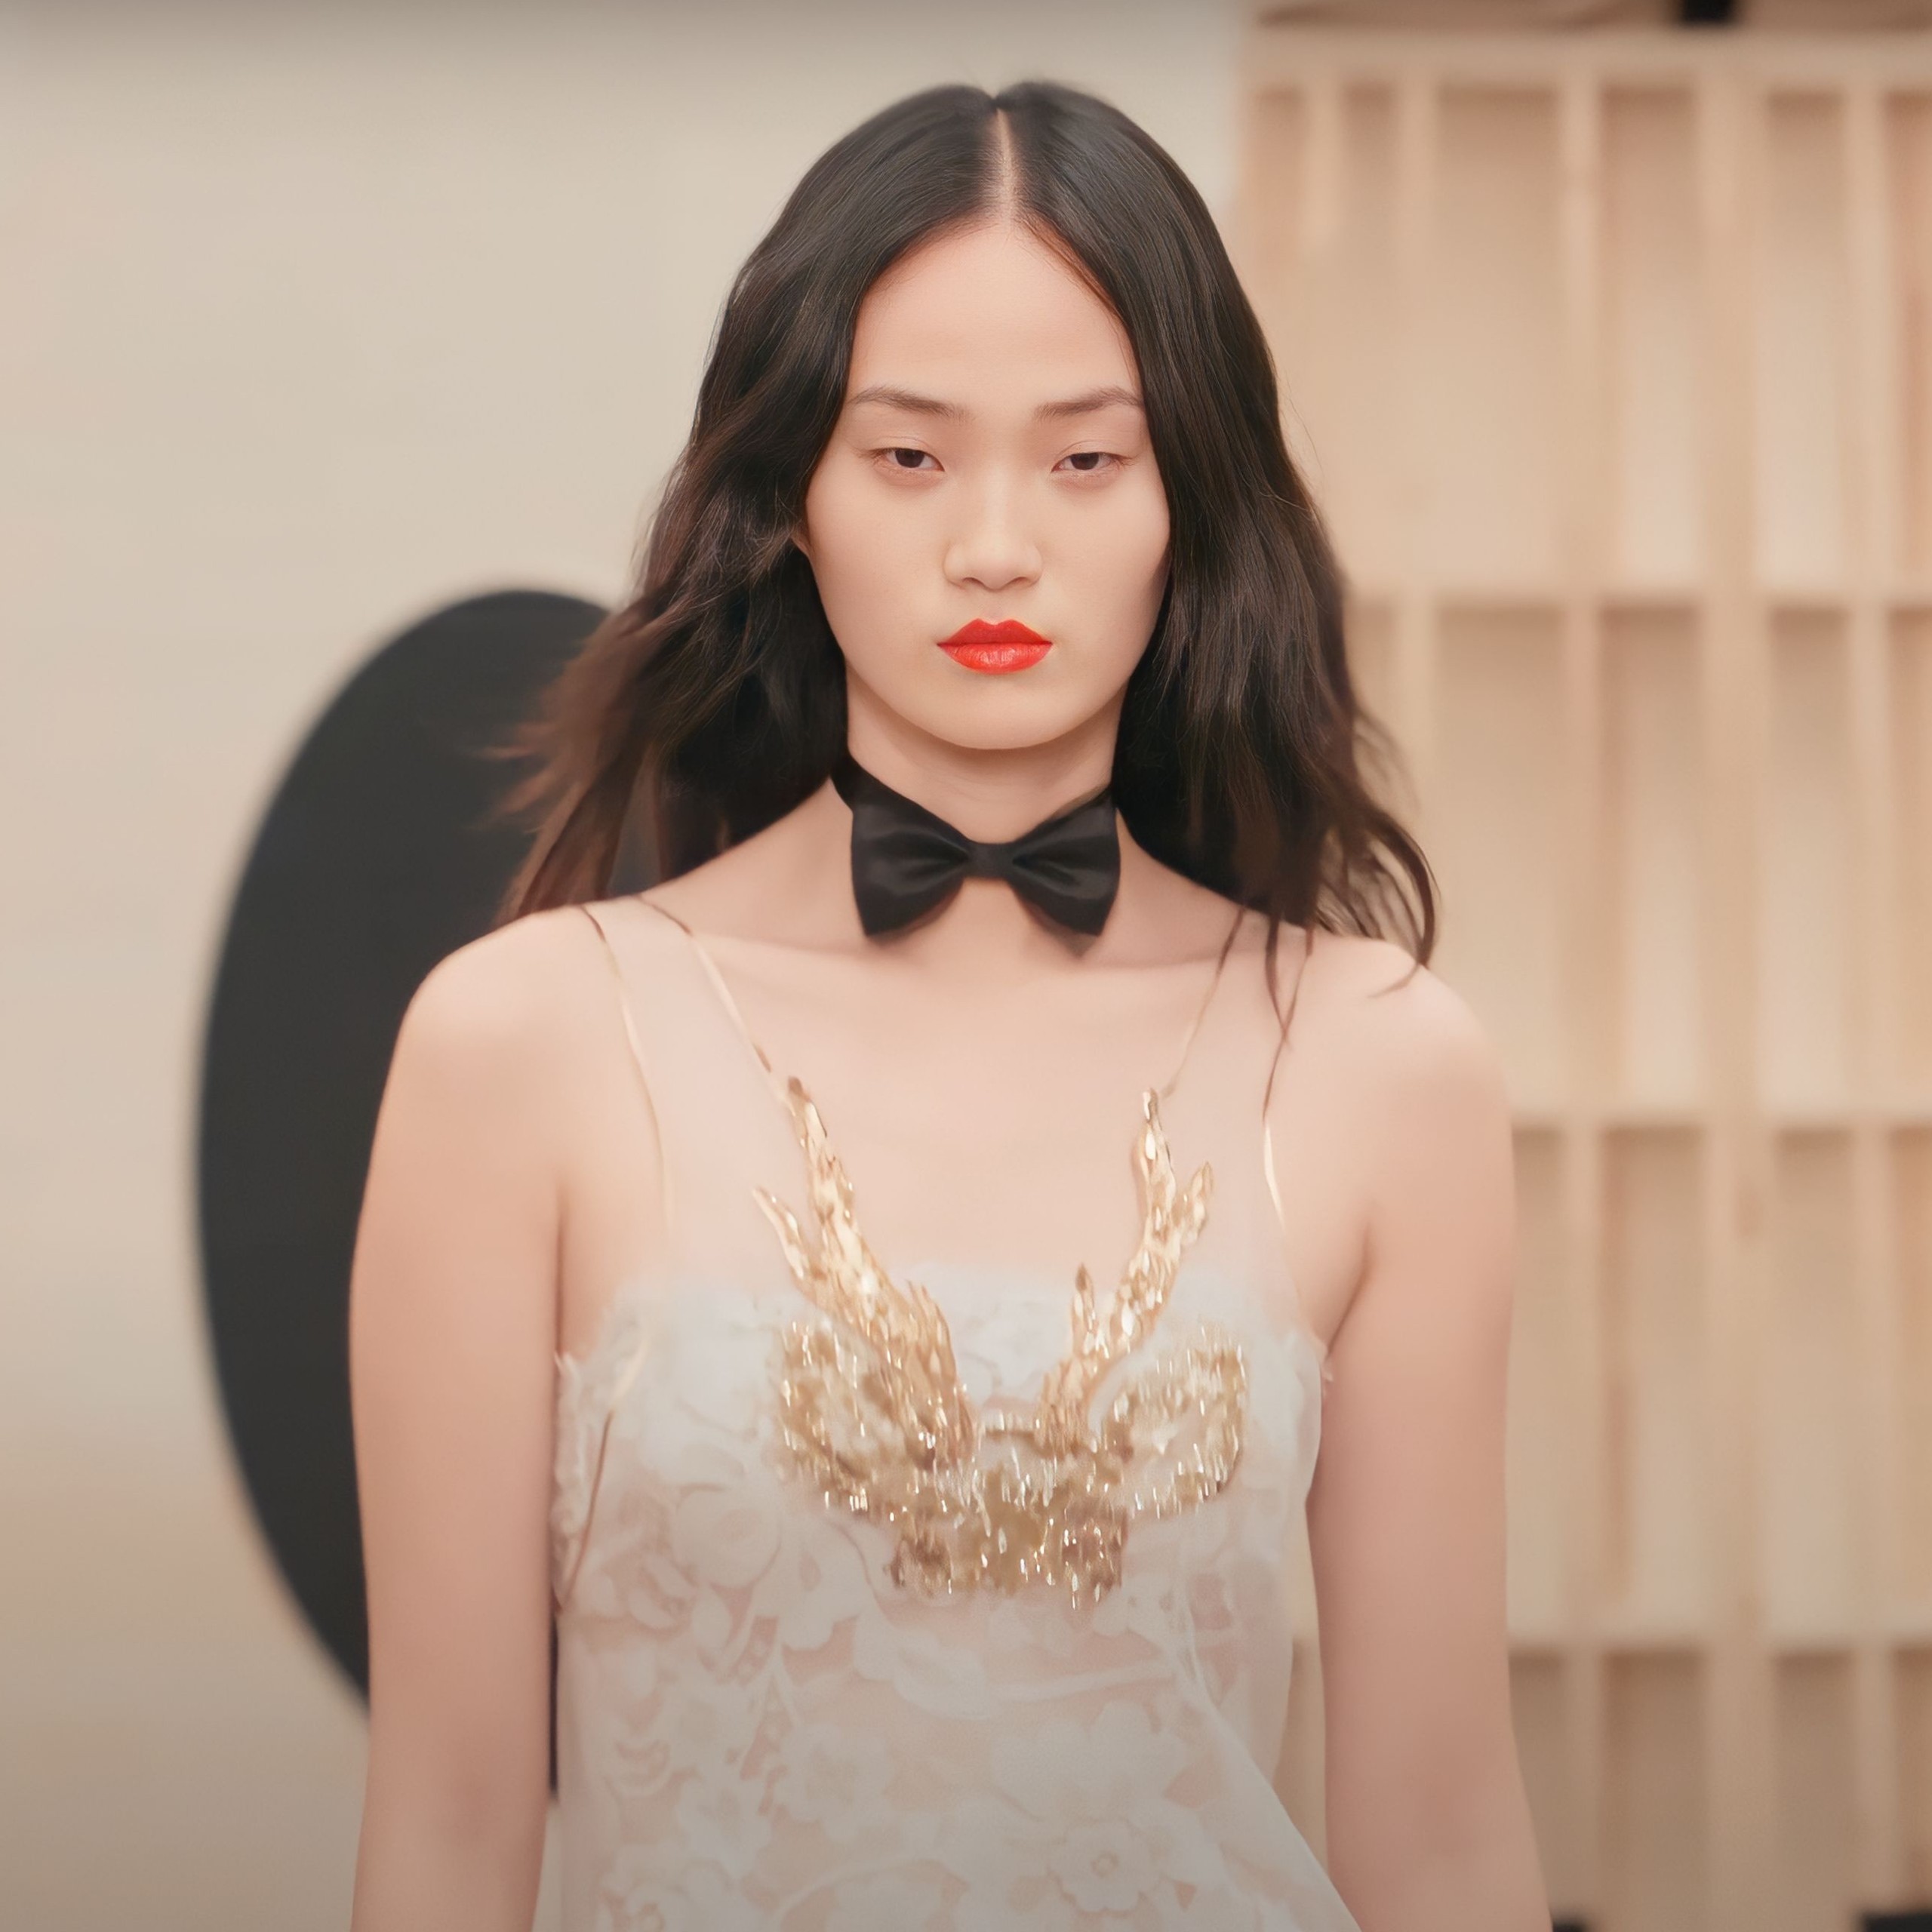 Asian Model Hyun Ji Shin Makes Fashion History at Chanel Runway